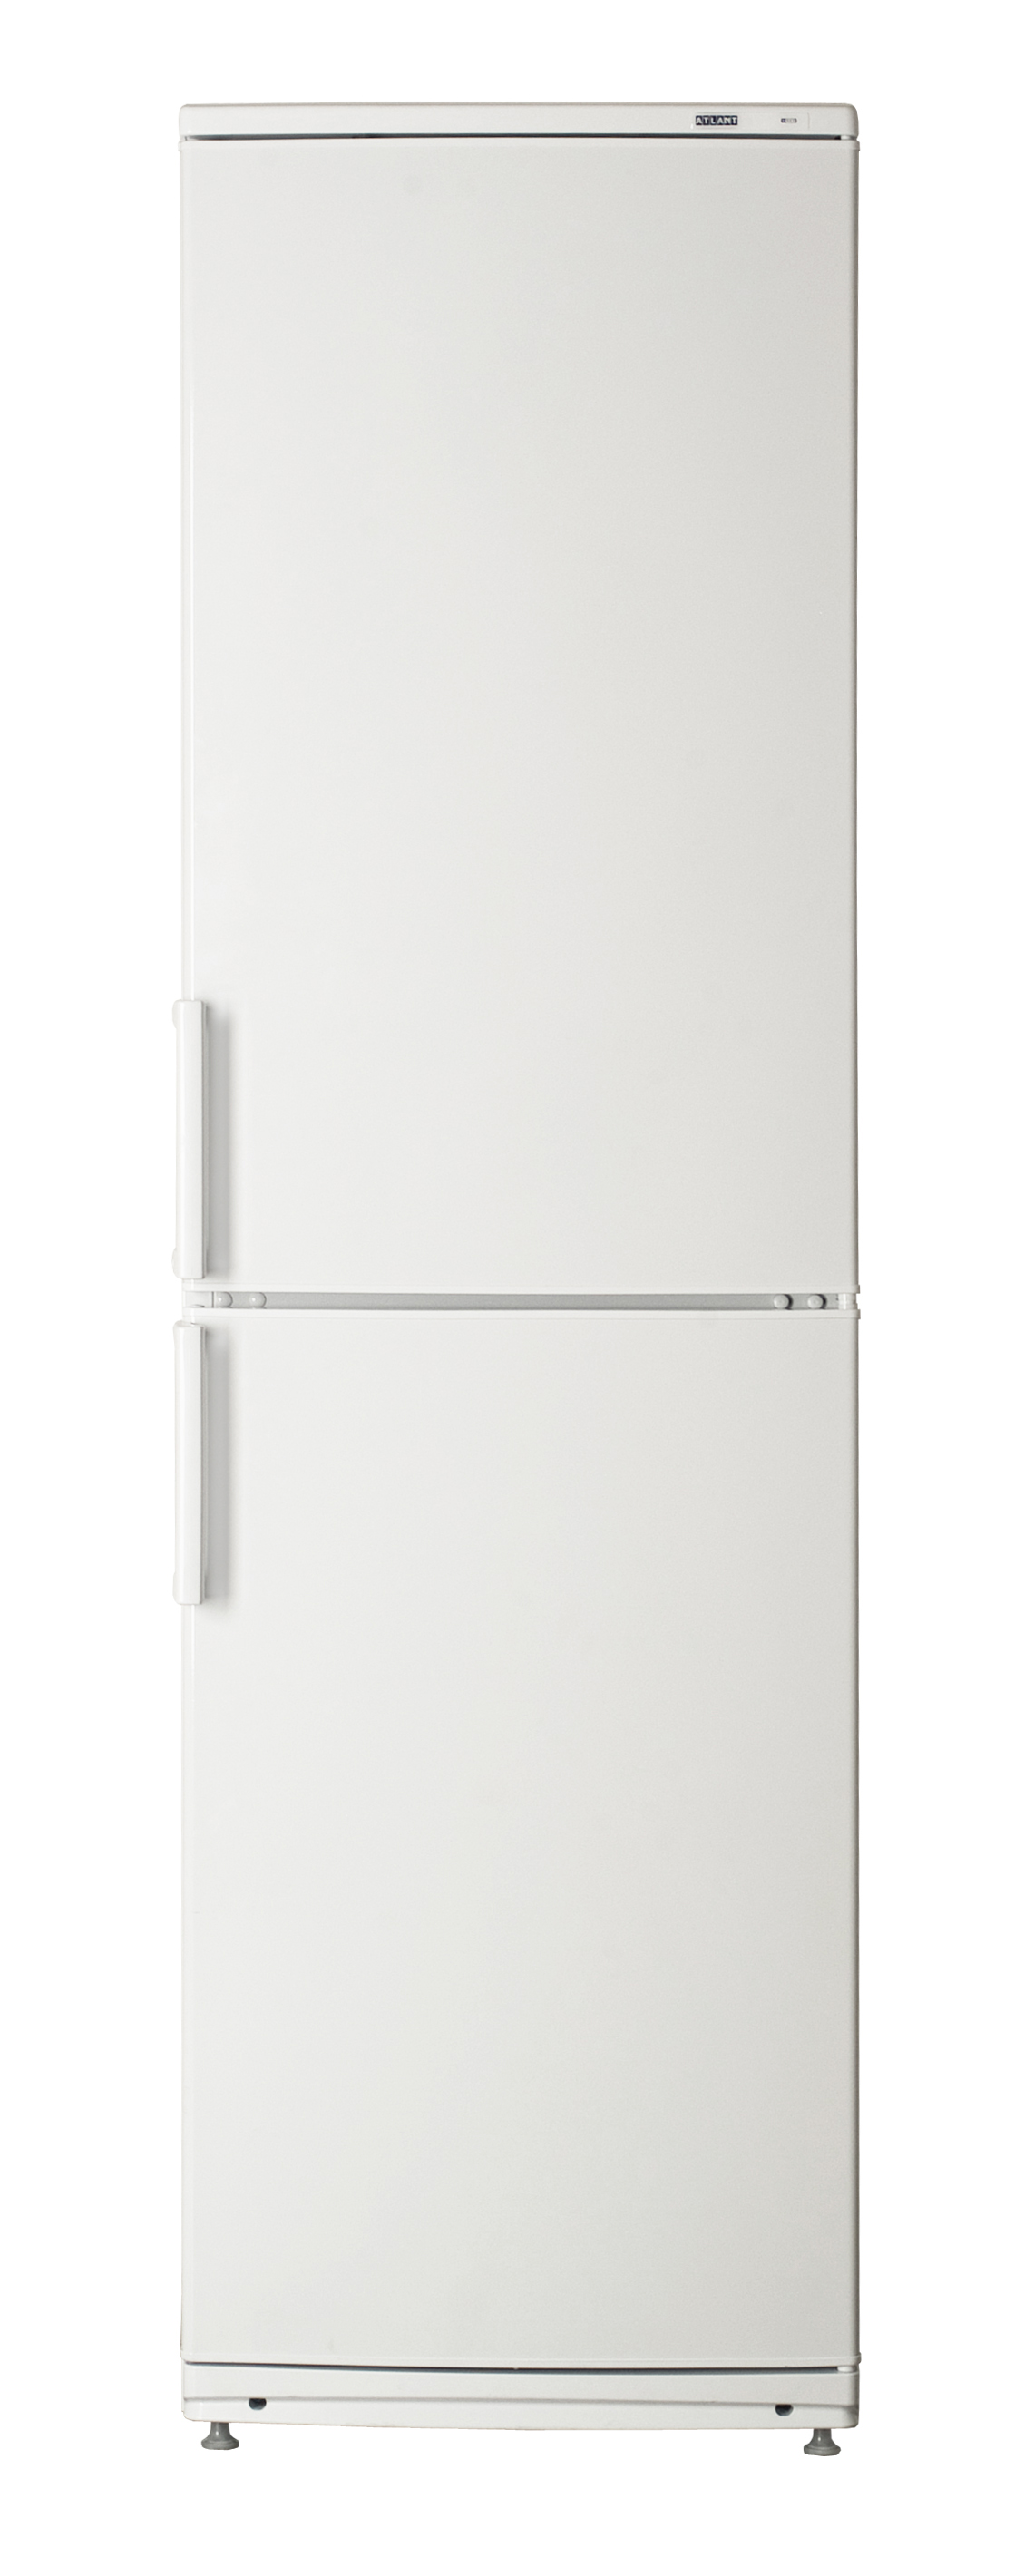 Холодильник Атлант 4025-000, цвет белый 172535 - фото 1